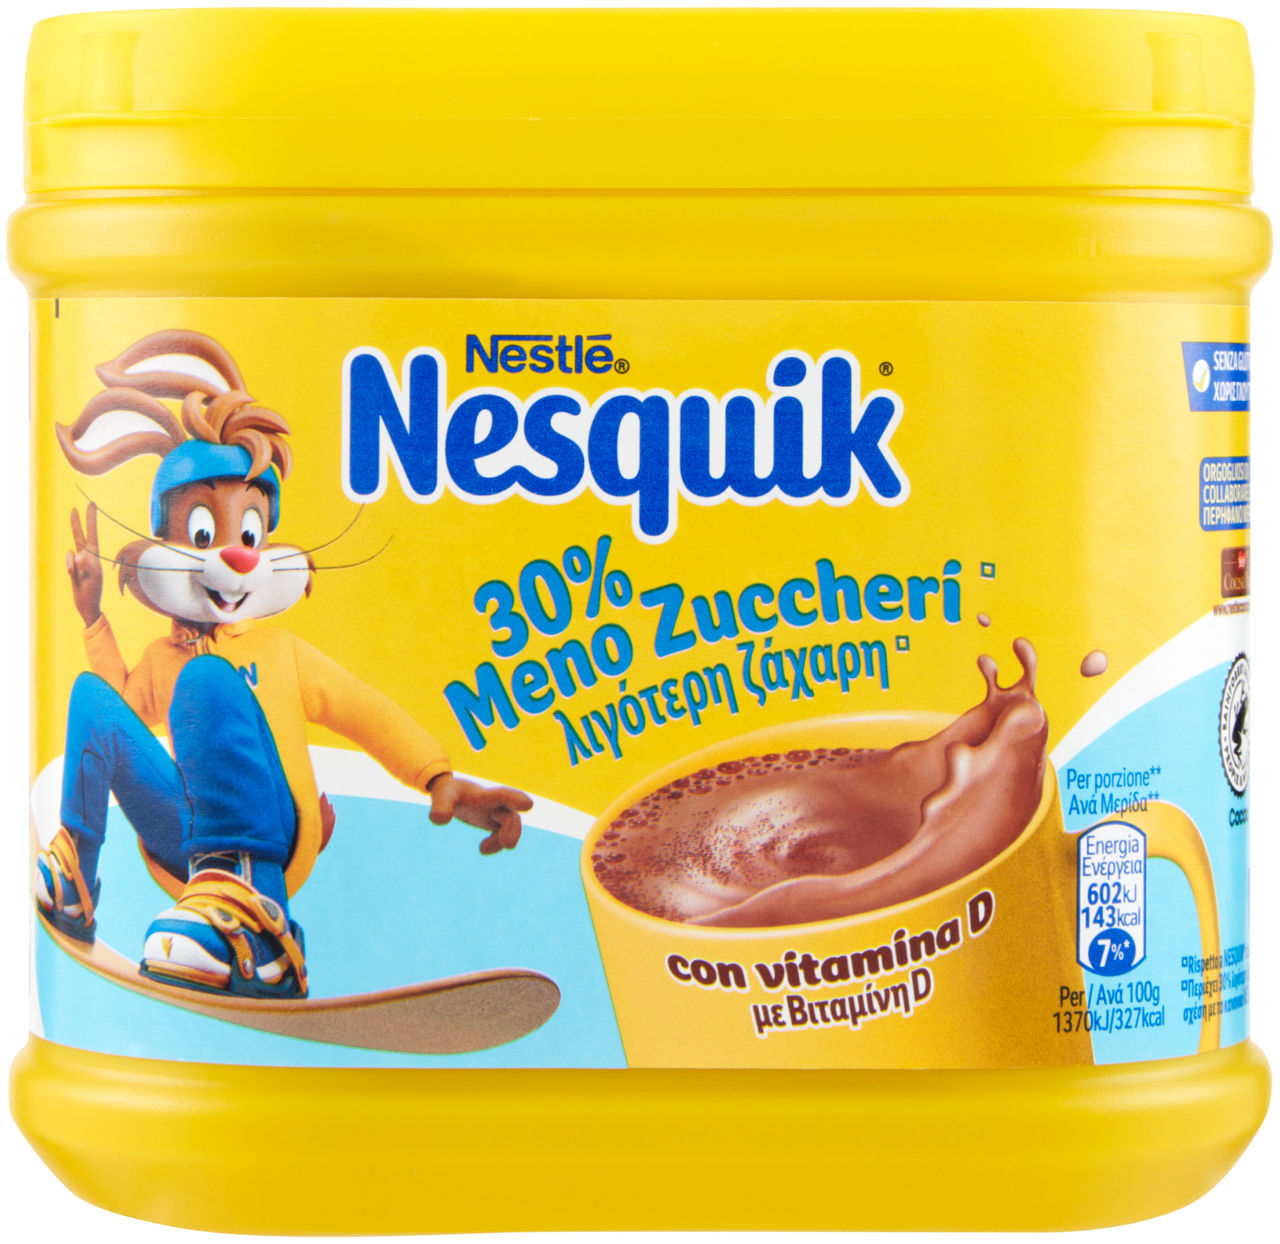 Nesquik -30% zucchero g 350